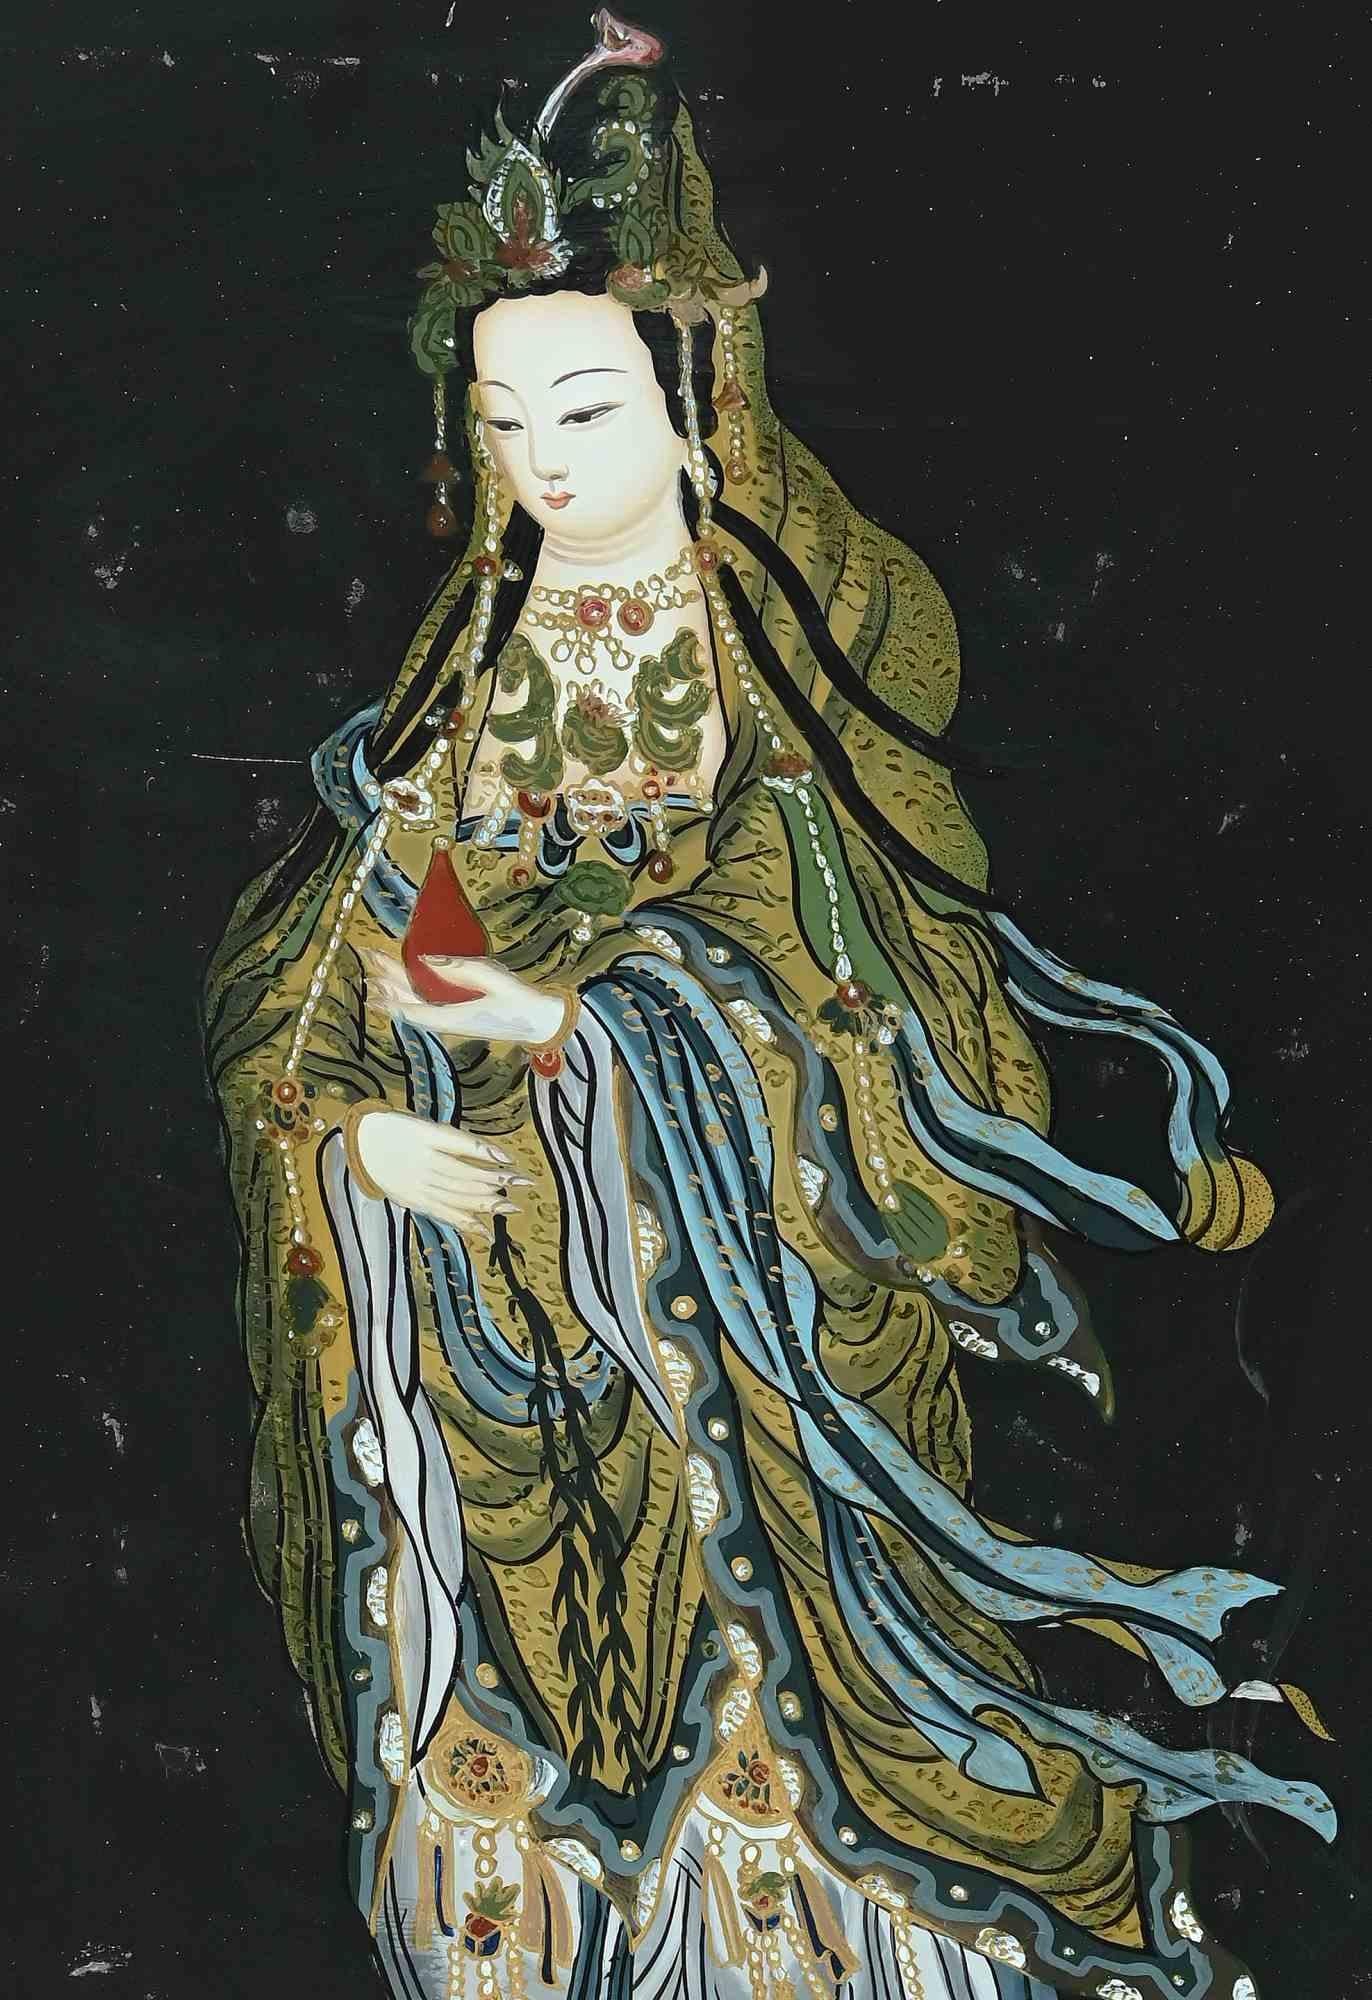 La femme orientale est une œuvre d'art moderne originale réalisée au début du 20e siècle par un artiste oriental.

Émail coloré mixte sur carton.

Le tableau représente une belle femme sur fond noir.

Comprend un cadre noir (état moyen) : 52 x